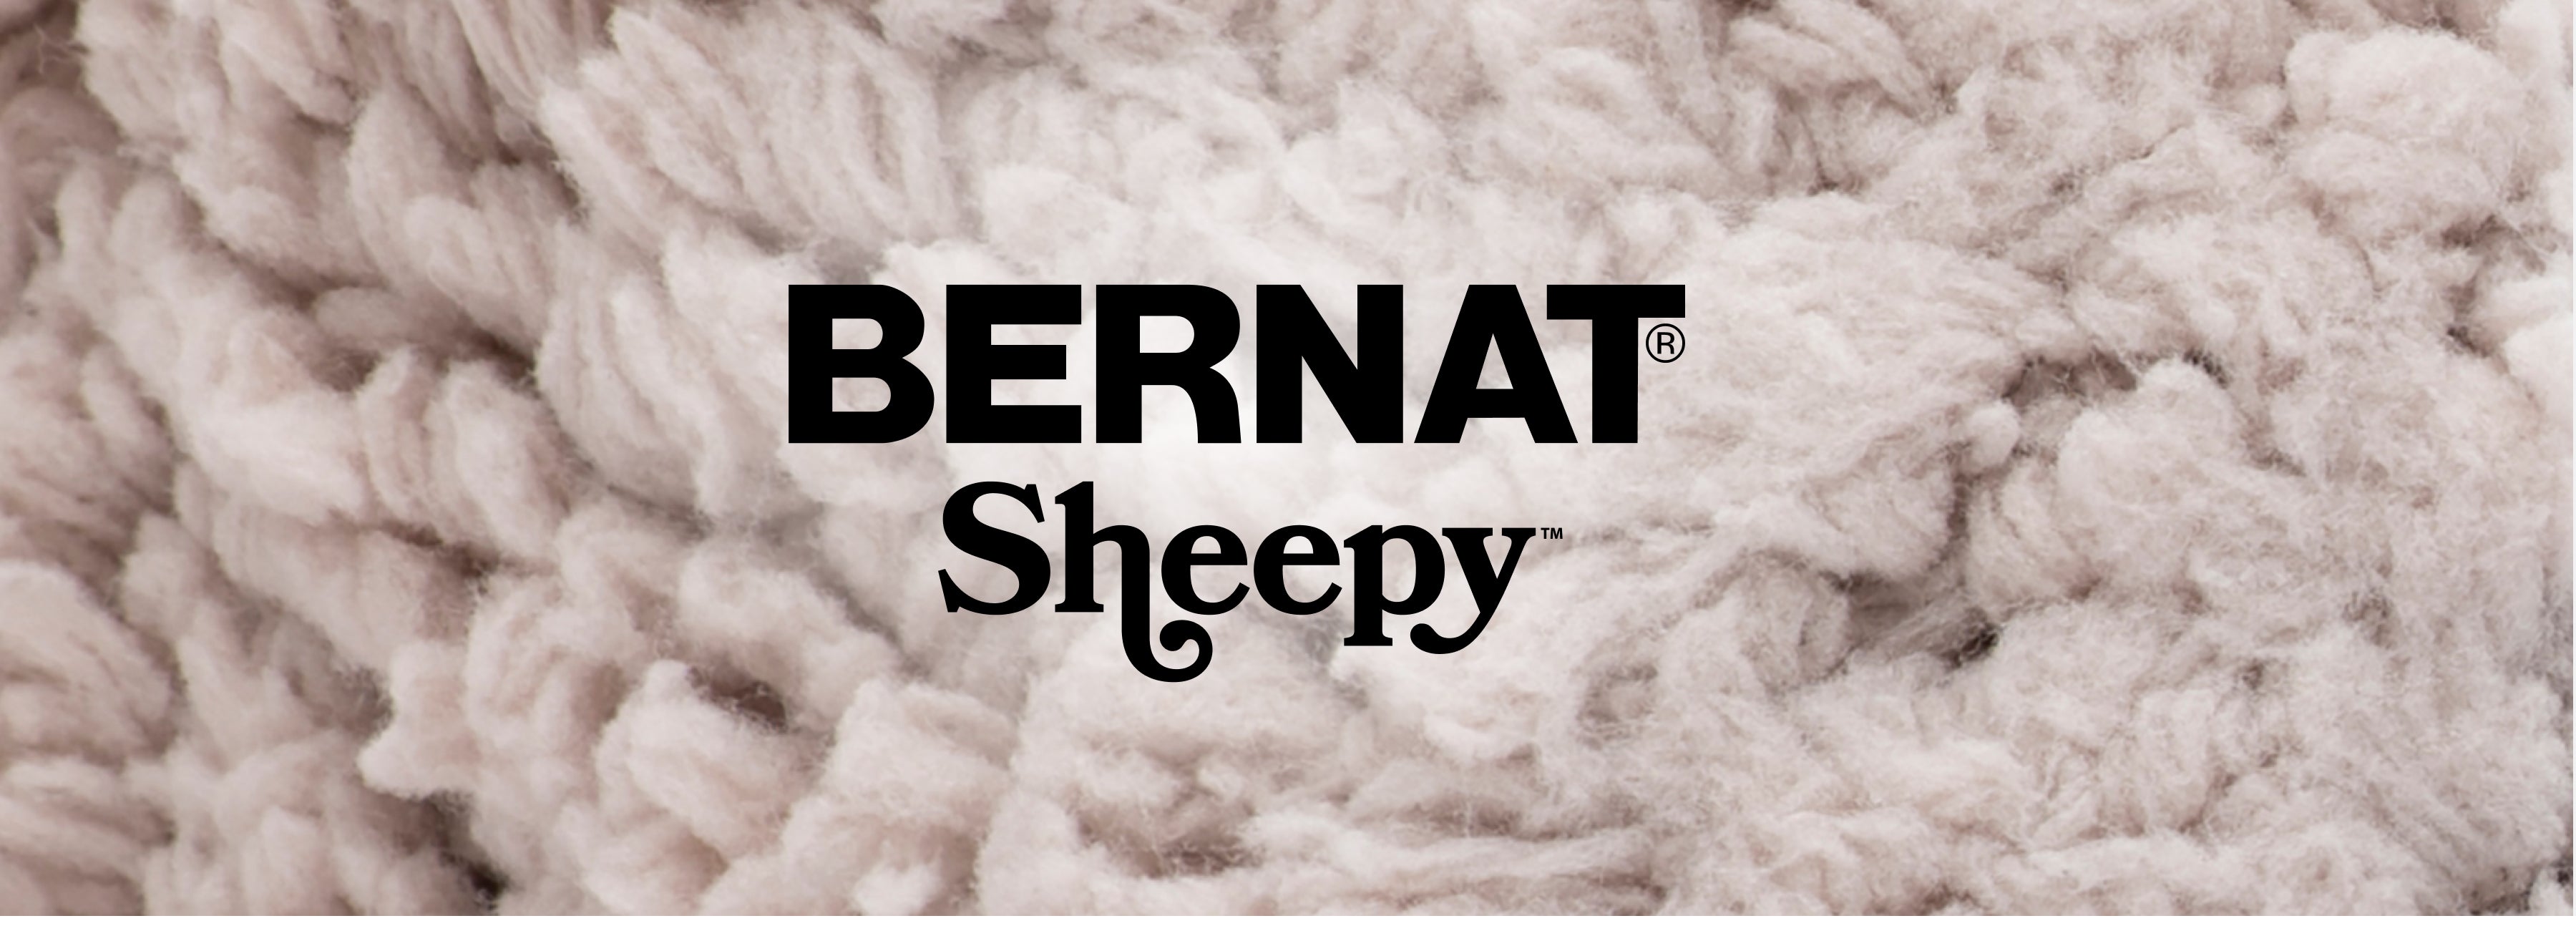 Bernat Sheepy